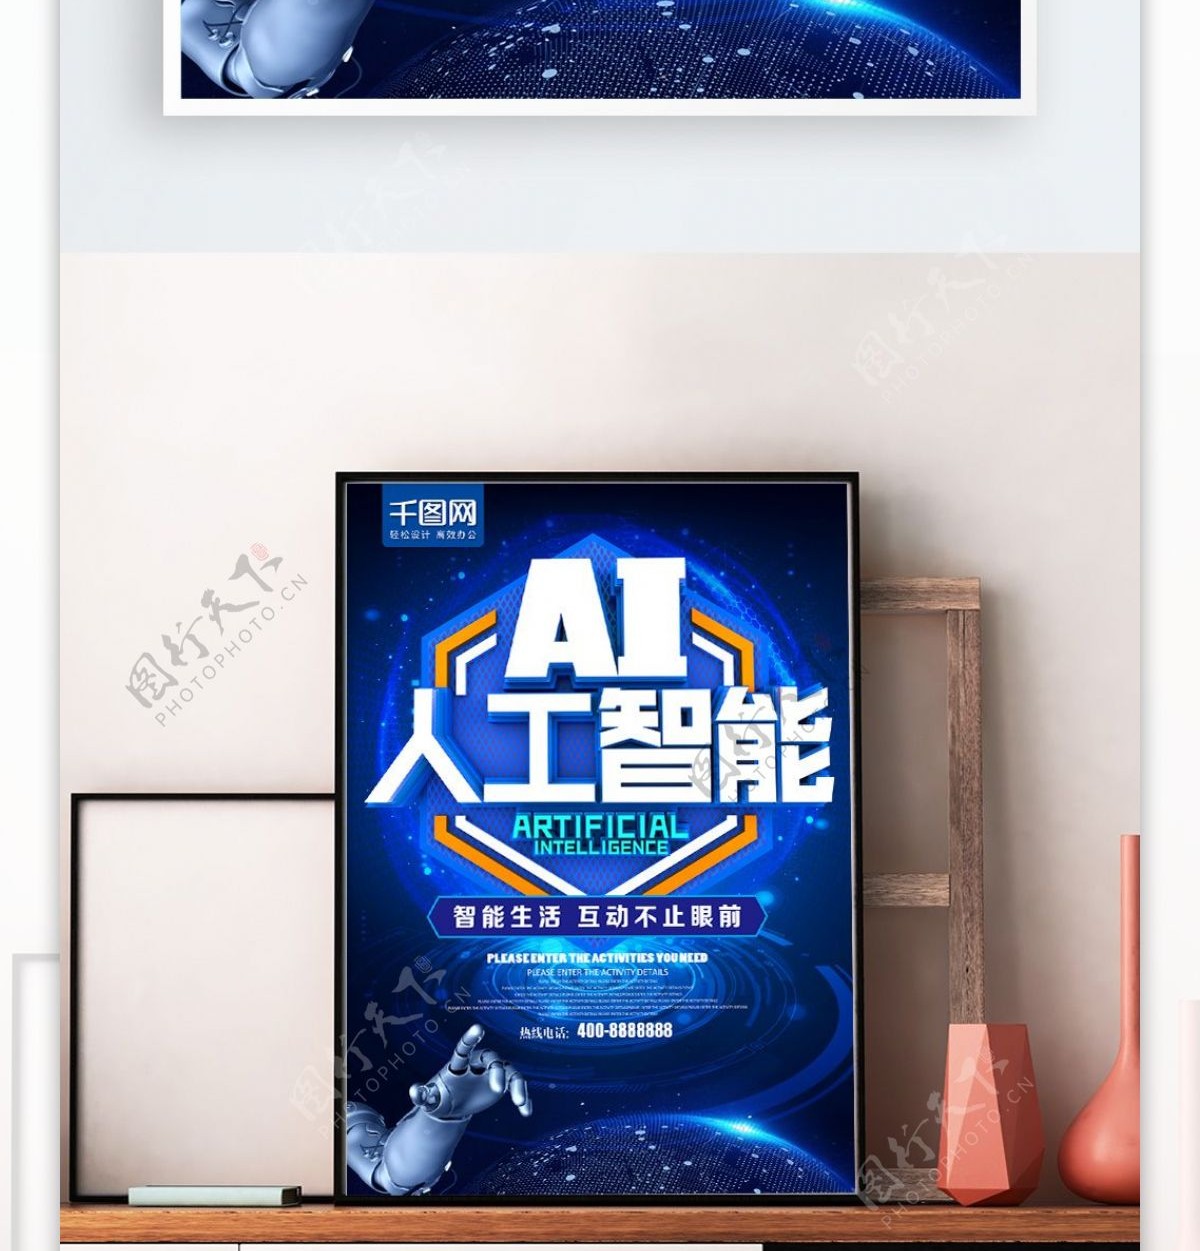 C4D蓝色大气AI人工智能科技海报